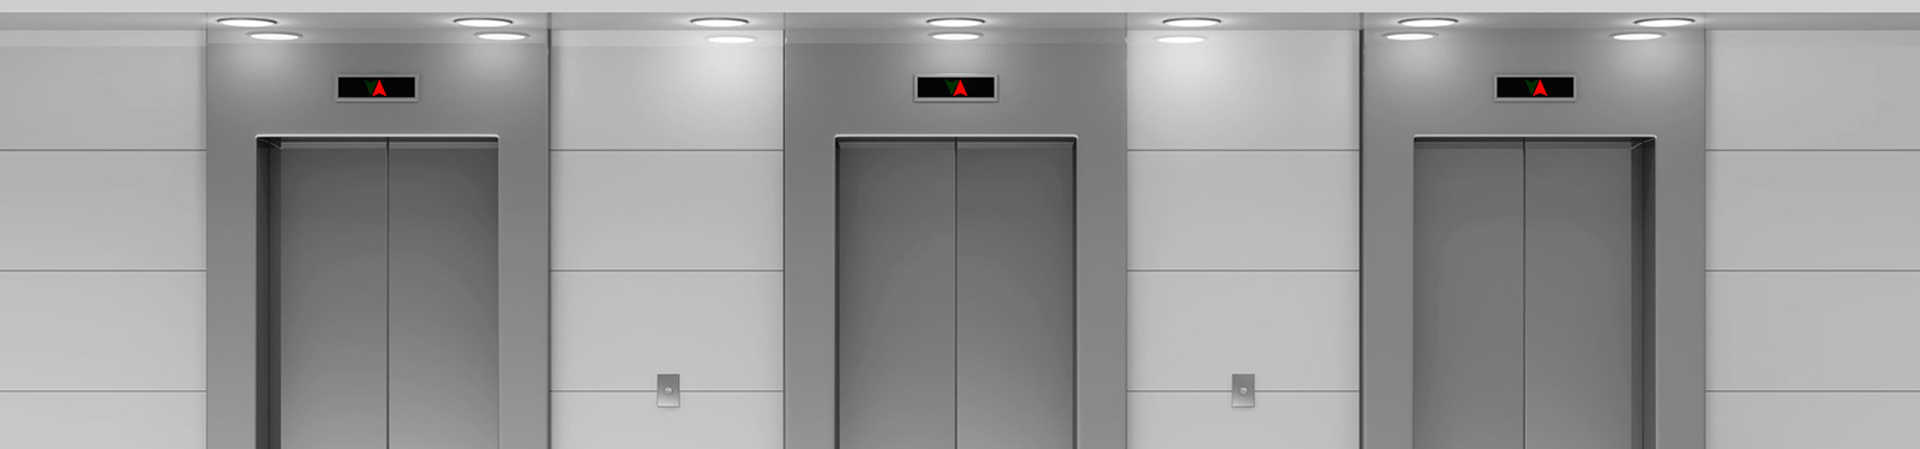 Installare ascensore